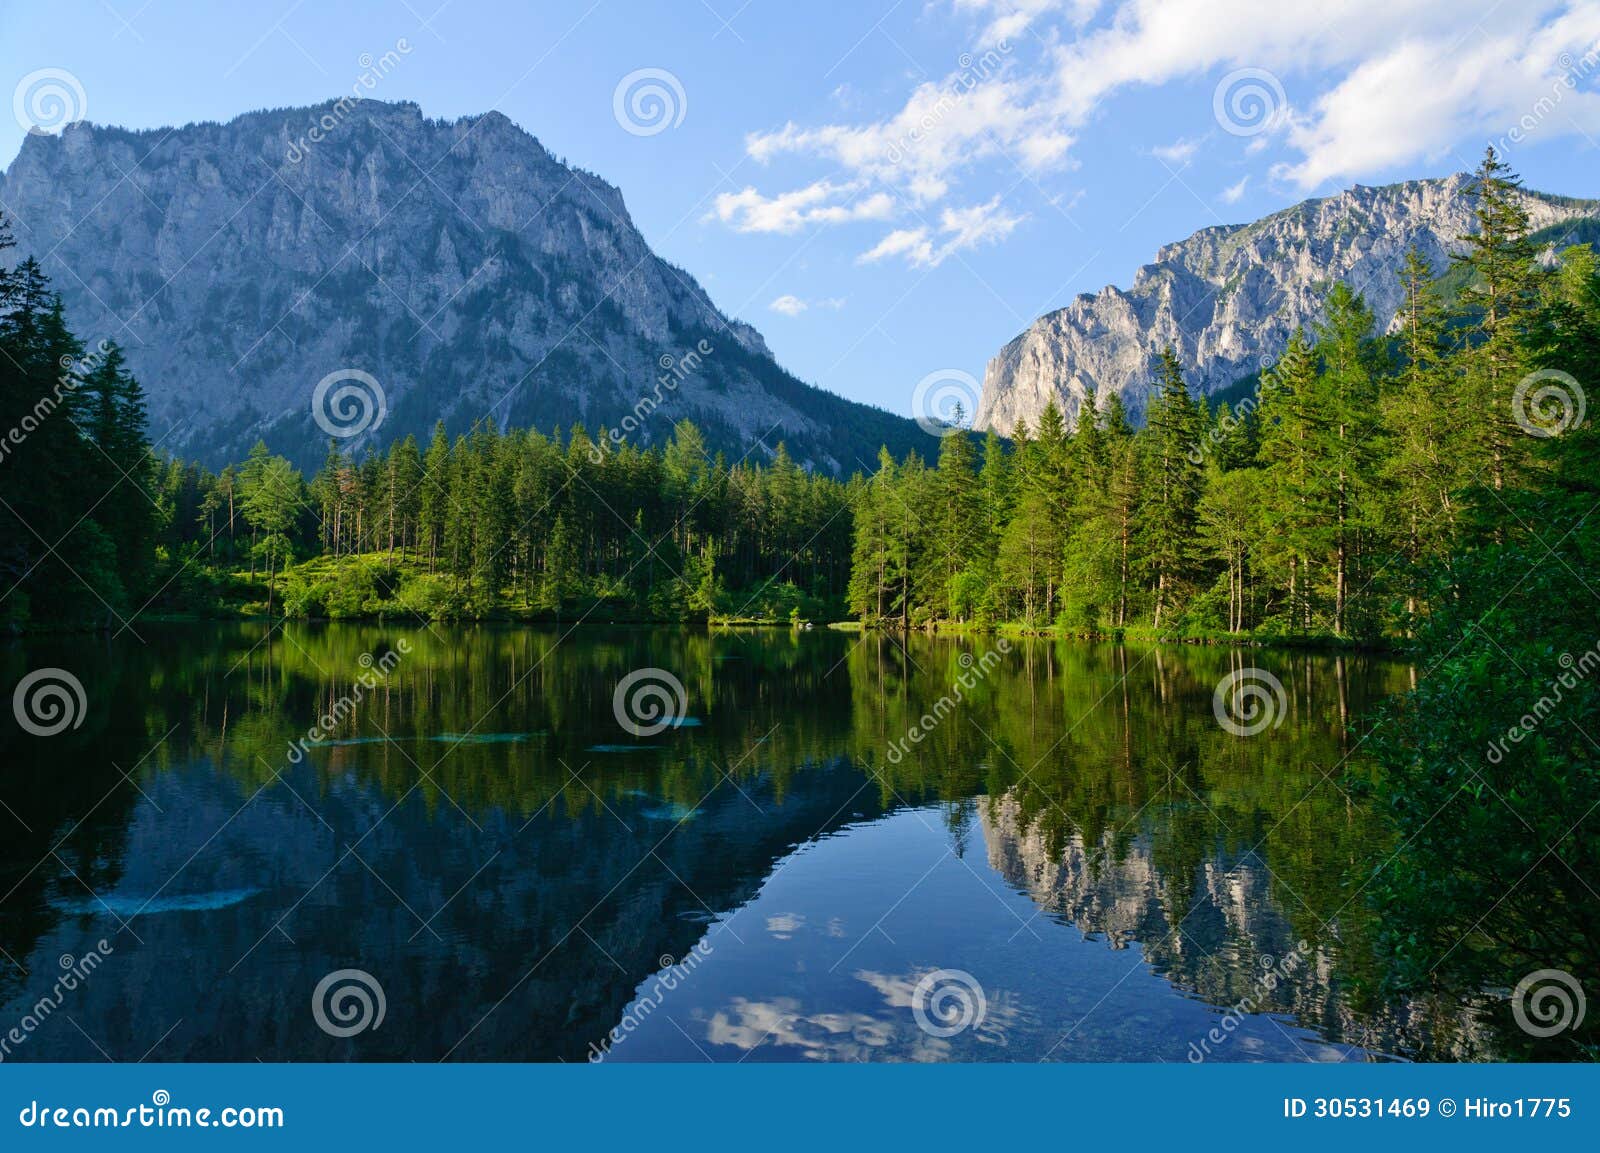 green lake (grÃÂ¼ner see) in bruck an der mur, austria